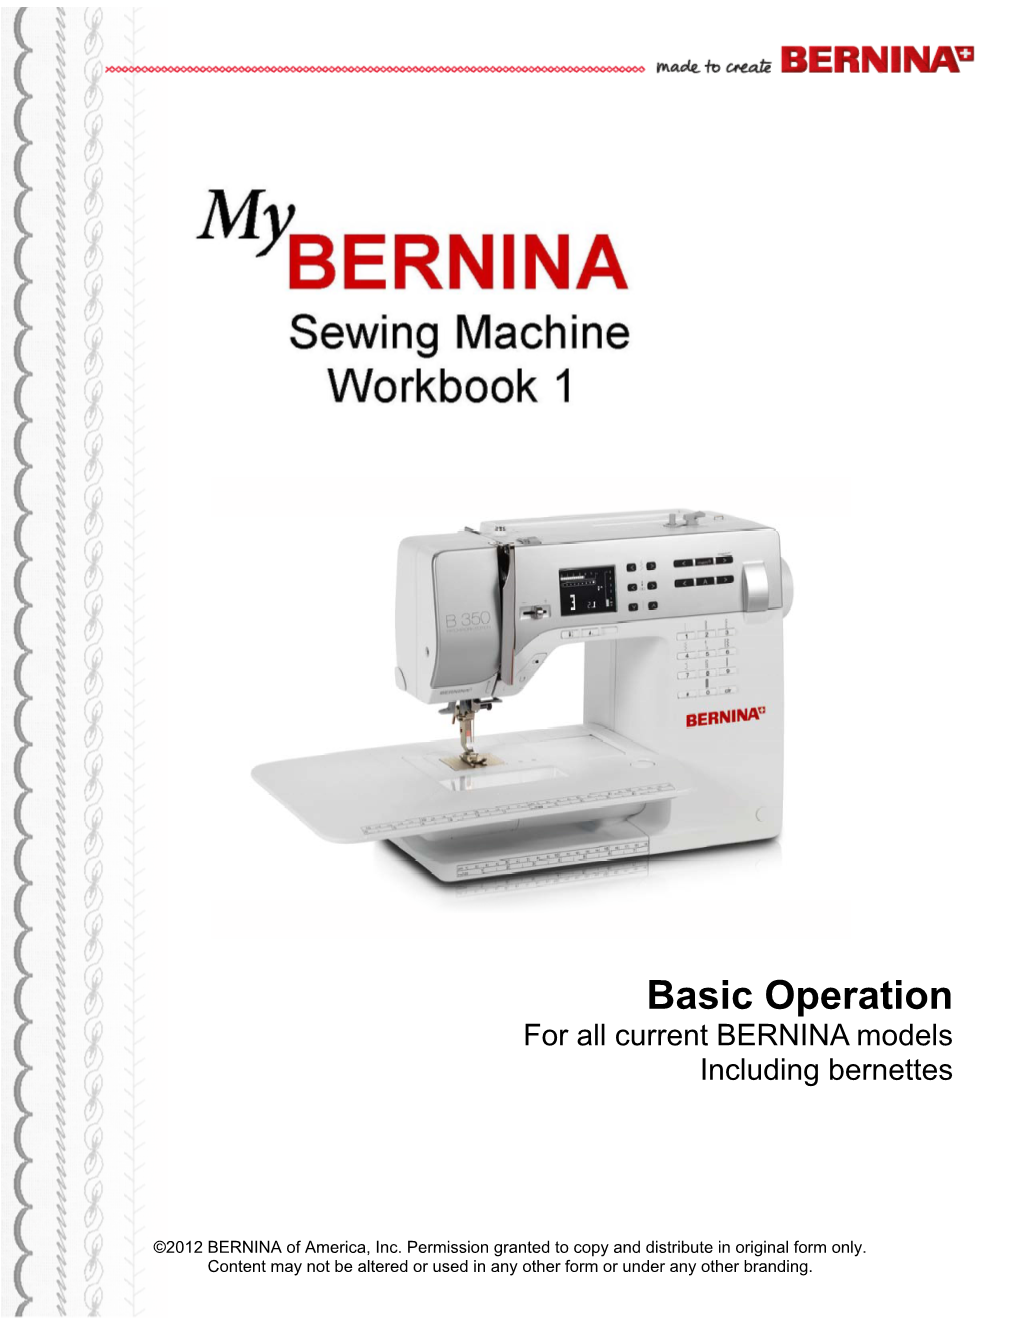 Basic Operation for All Current BERNINA Models Including Bernettes